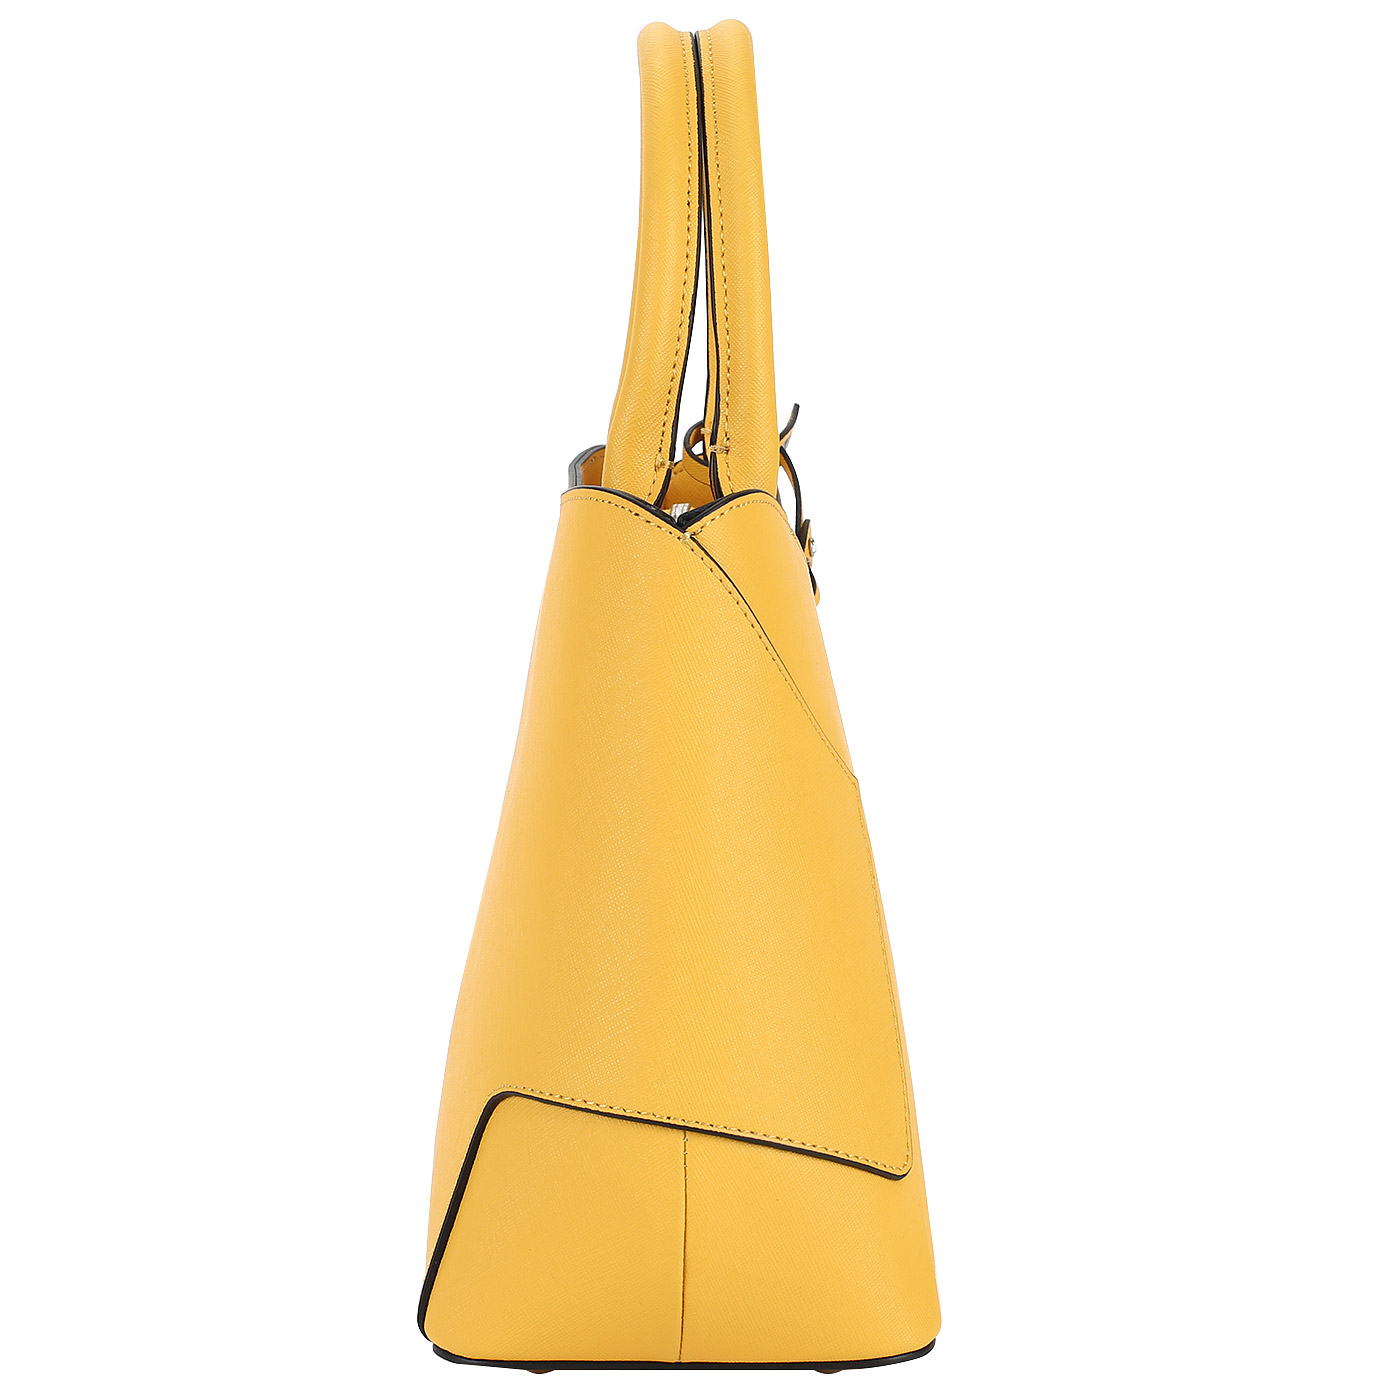 Женская сумка из сафьяна Cromia Wisper